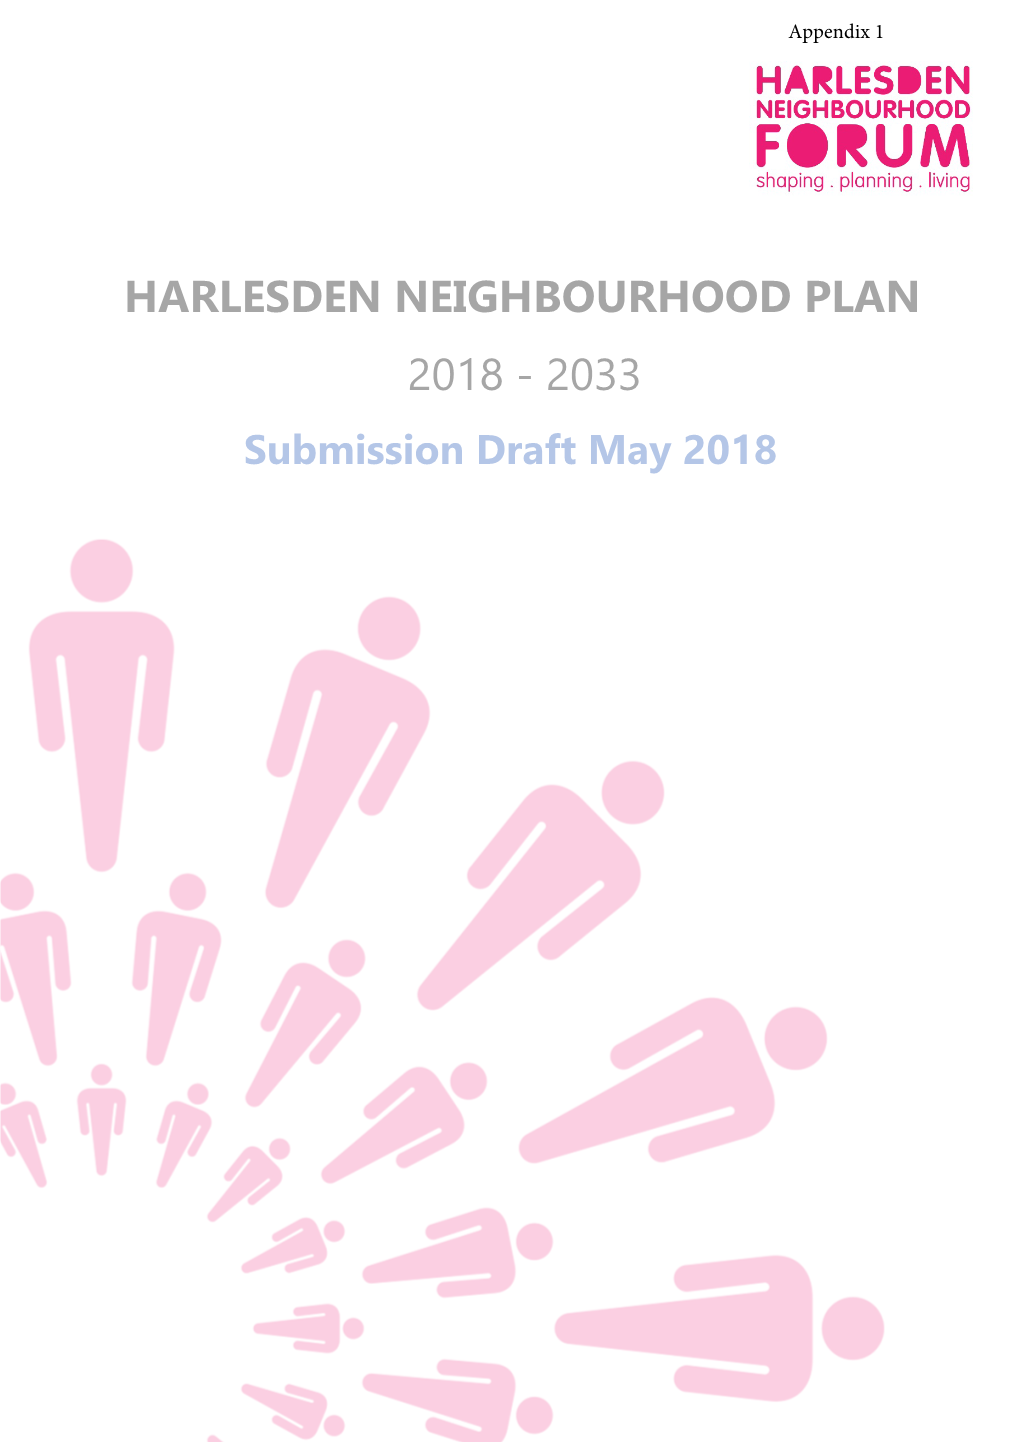 Harlesden Neighbourhood Plan PRE-CHECK DRAFT MARCH 2018